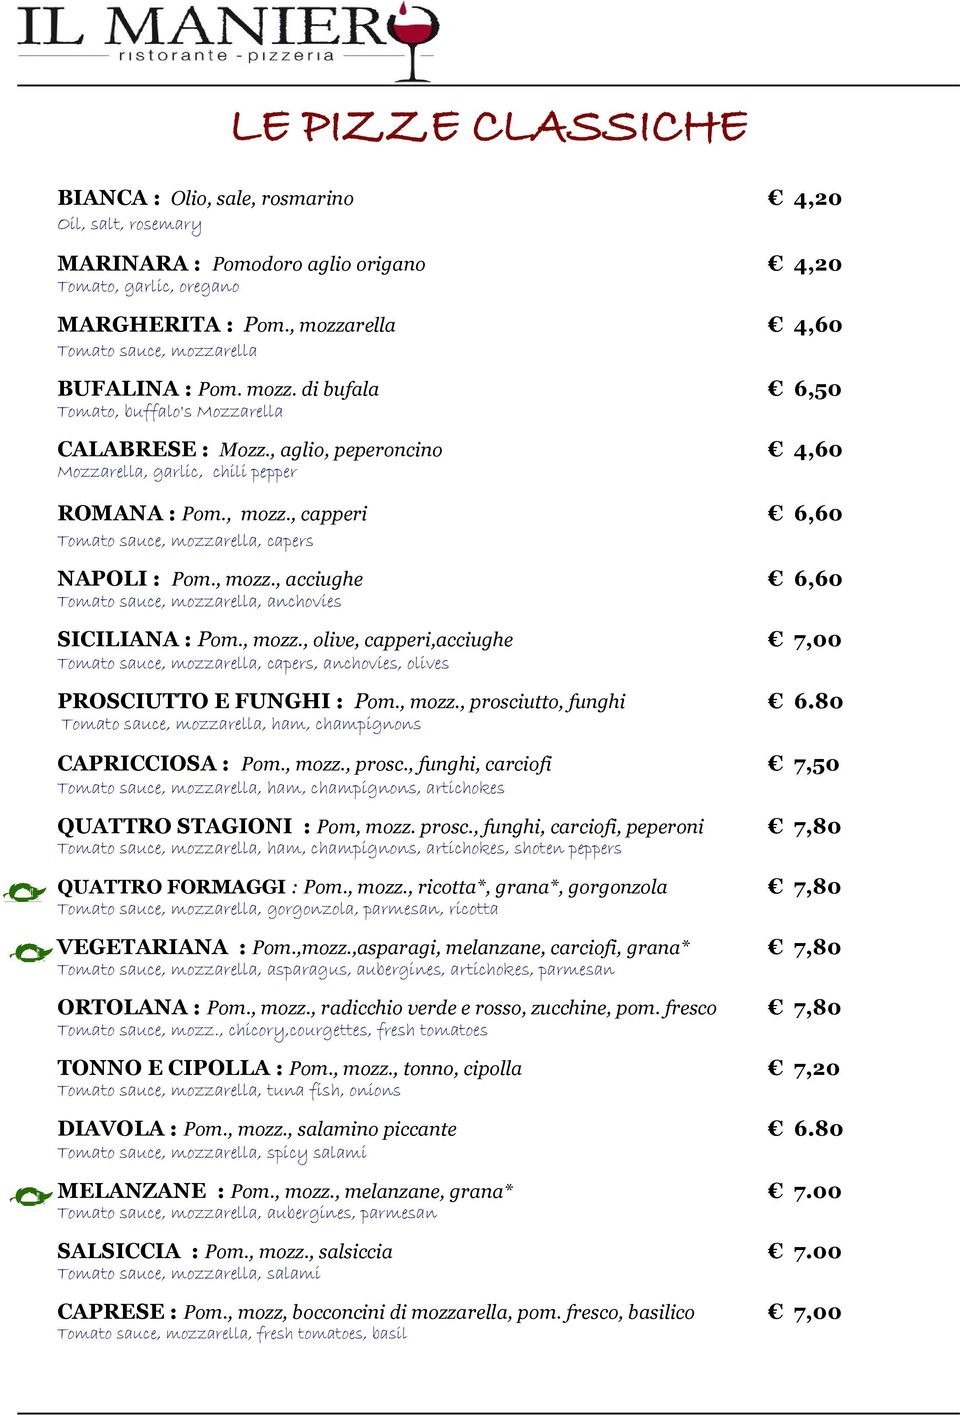 , mozz., capperi 6,60 Tomato sauce, mozzarella, capers NAPOLI : Pom., mozz., acciughe 6,60 Tomato sauce, mozzarella, anchovies SICILIANA : Pom., mozz., olive, capperi,acciughe 7,00 Tomato sauce, mozzarella, capers, anchovies, olives PROSCIUTTO E FUNGHI : Pom.